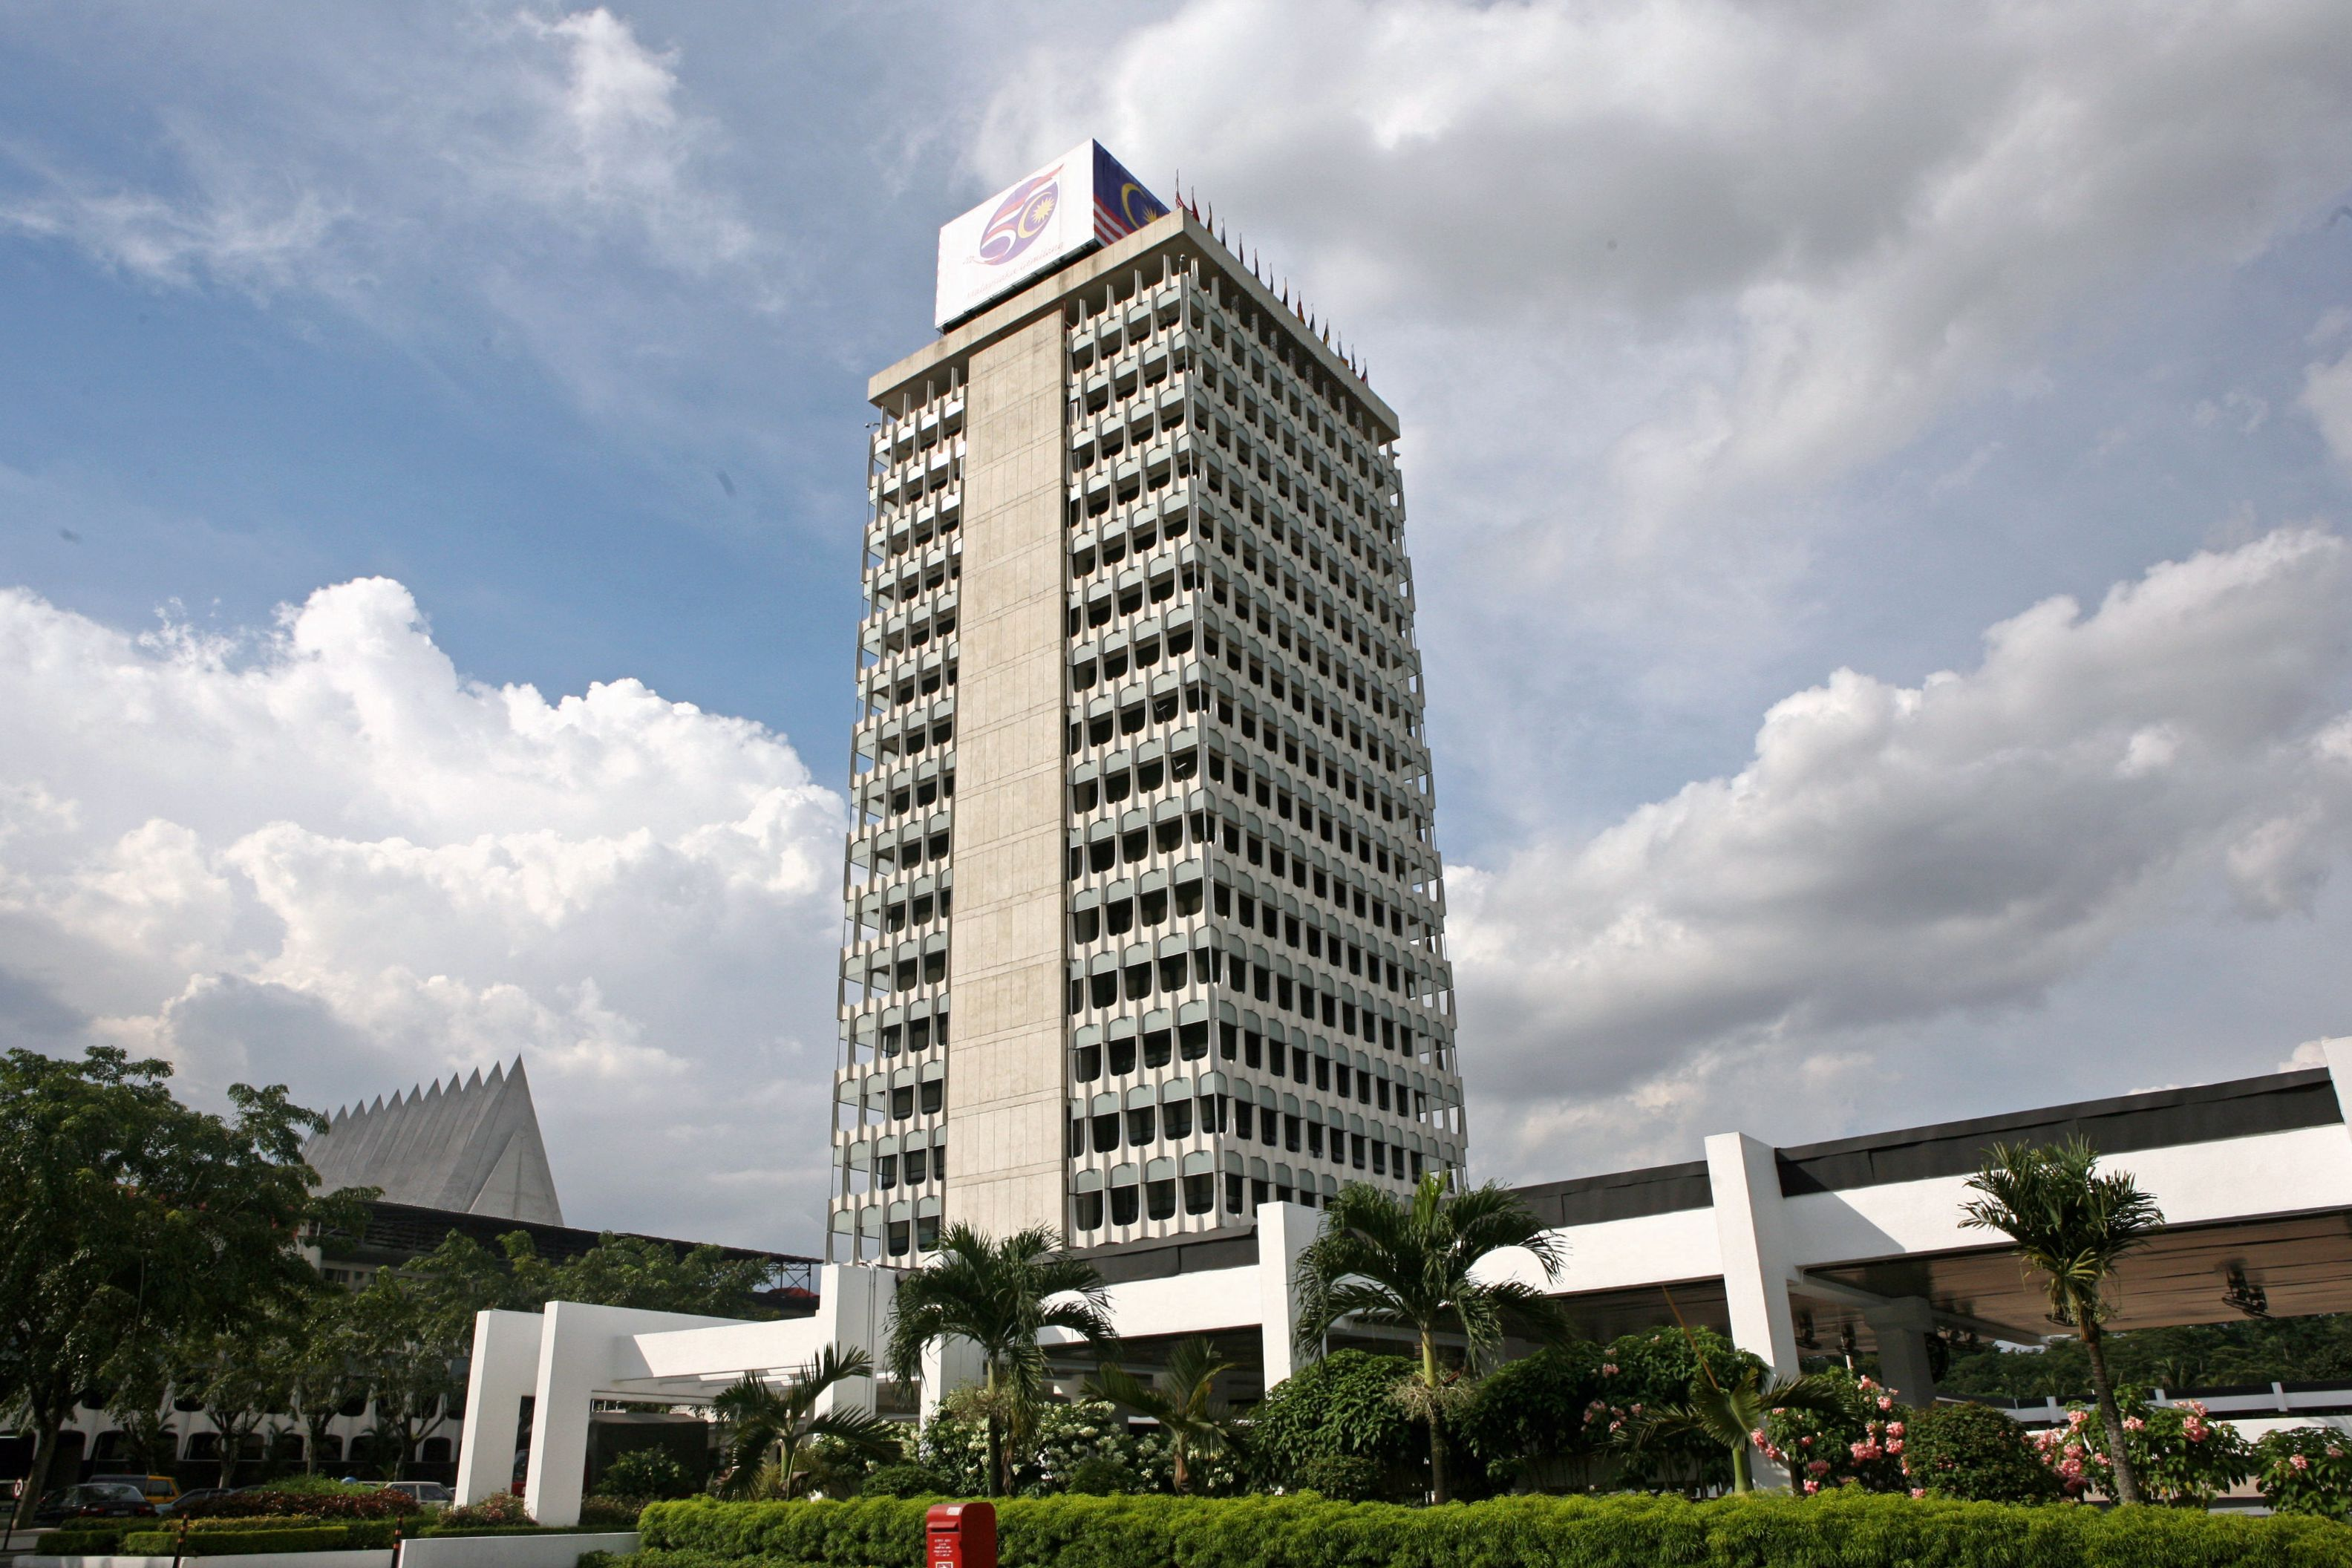 Malaysian parliament building